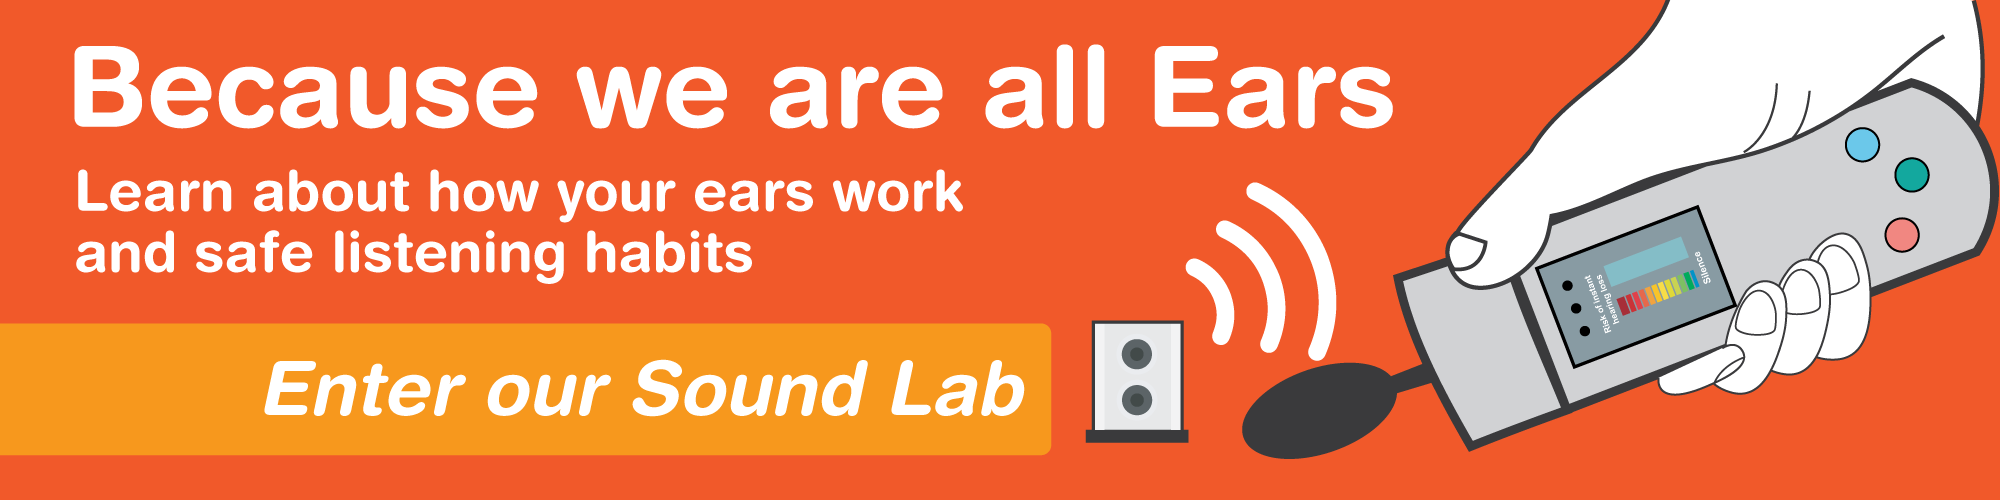 London Ear Lab -Sound Lab